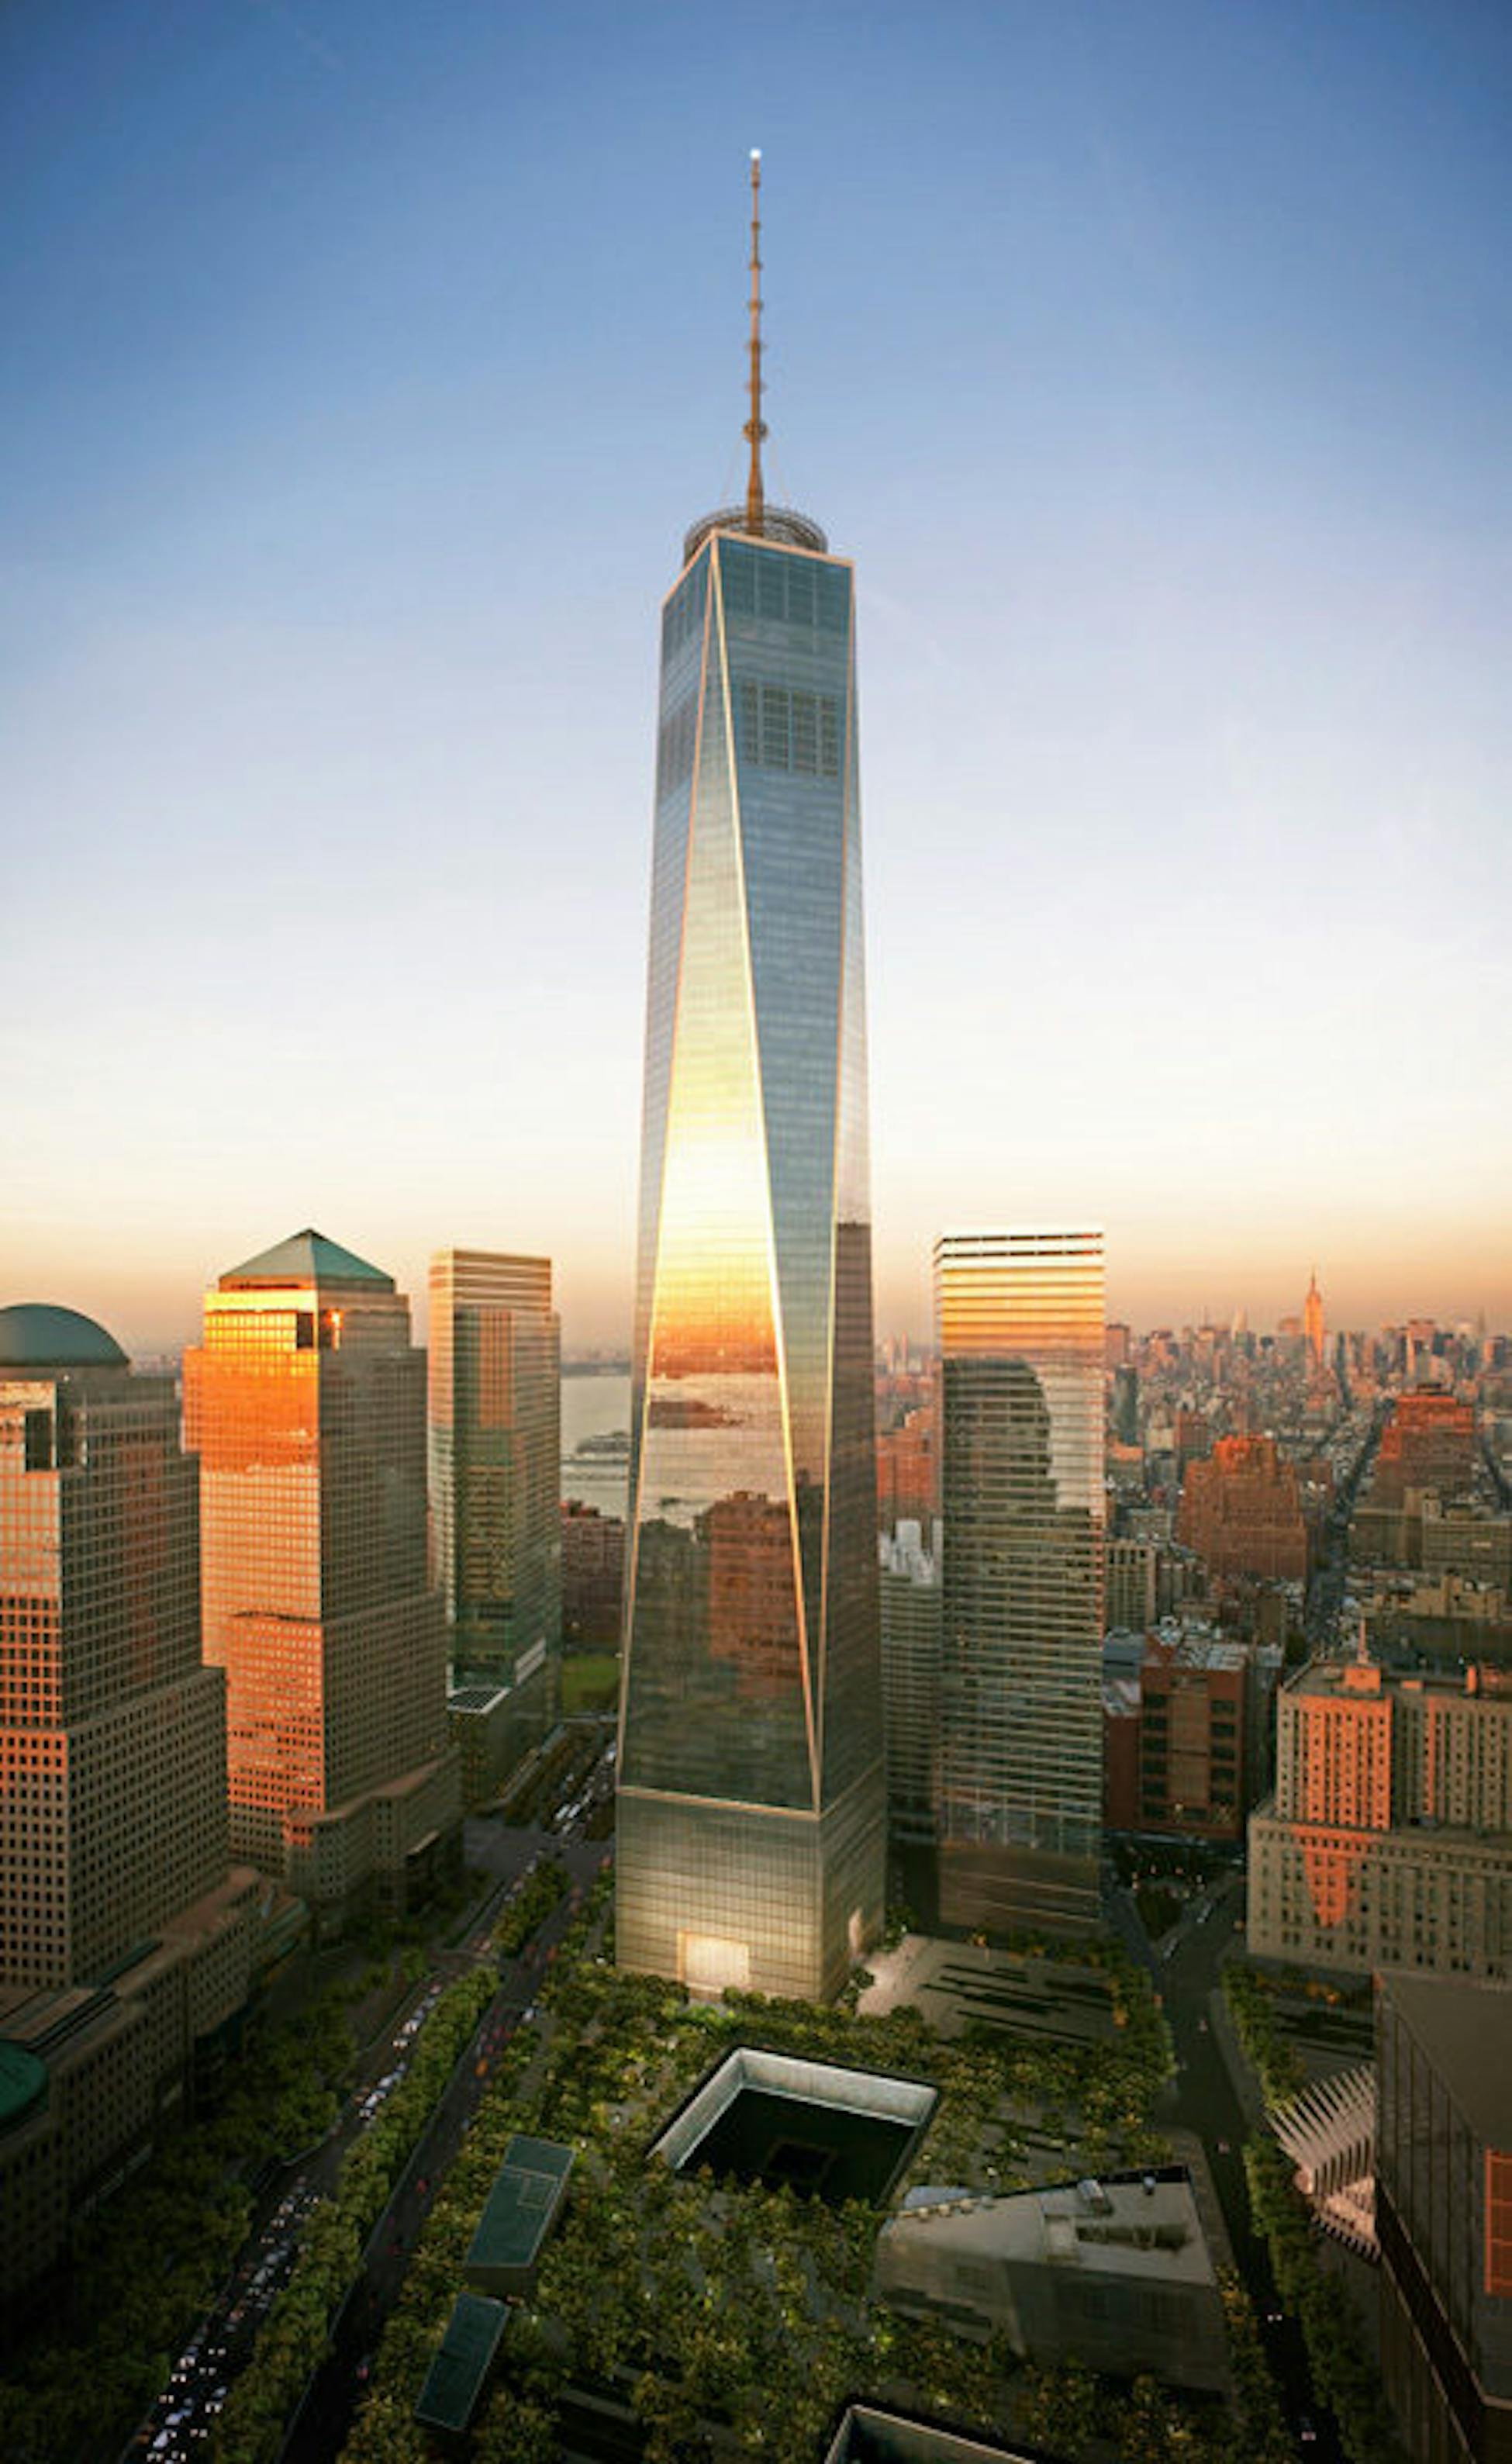 One world new york. Всемирный торговый центр 1 башня свободы в Нижнем Манхэттене. Нью-Йорк торговые центры башни Близнецы. ВТЦ Нью-Йорк башни Близнецы. ВТЦ Нью-Йорк 2022.